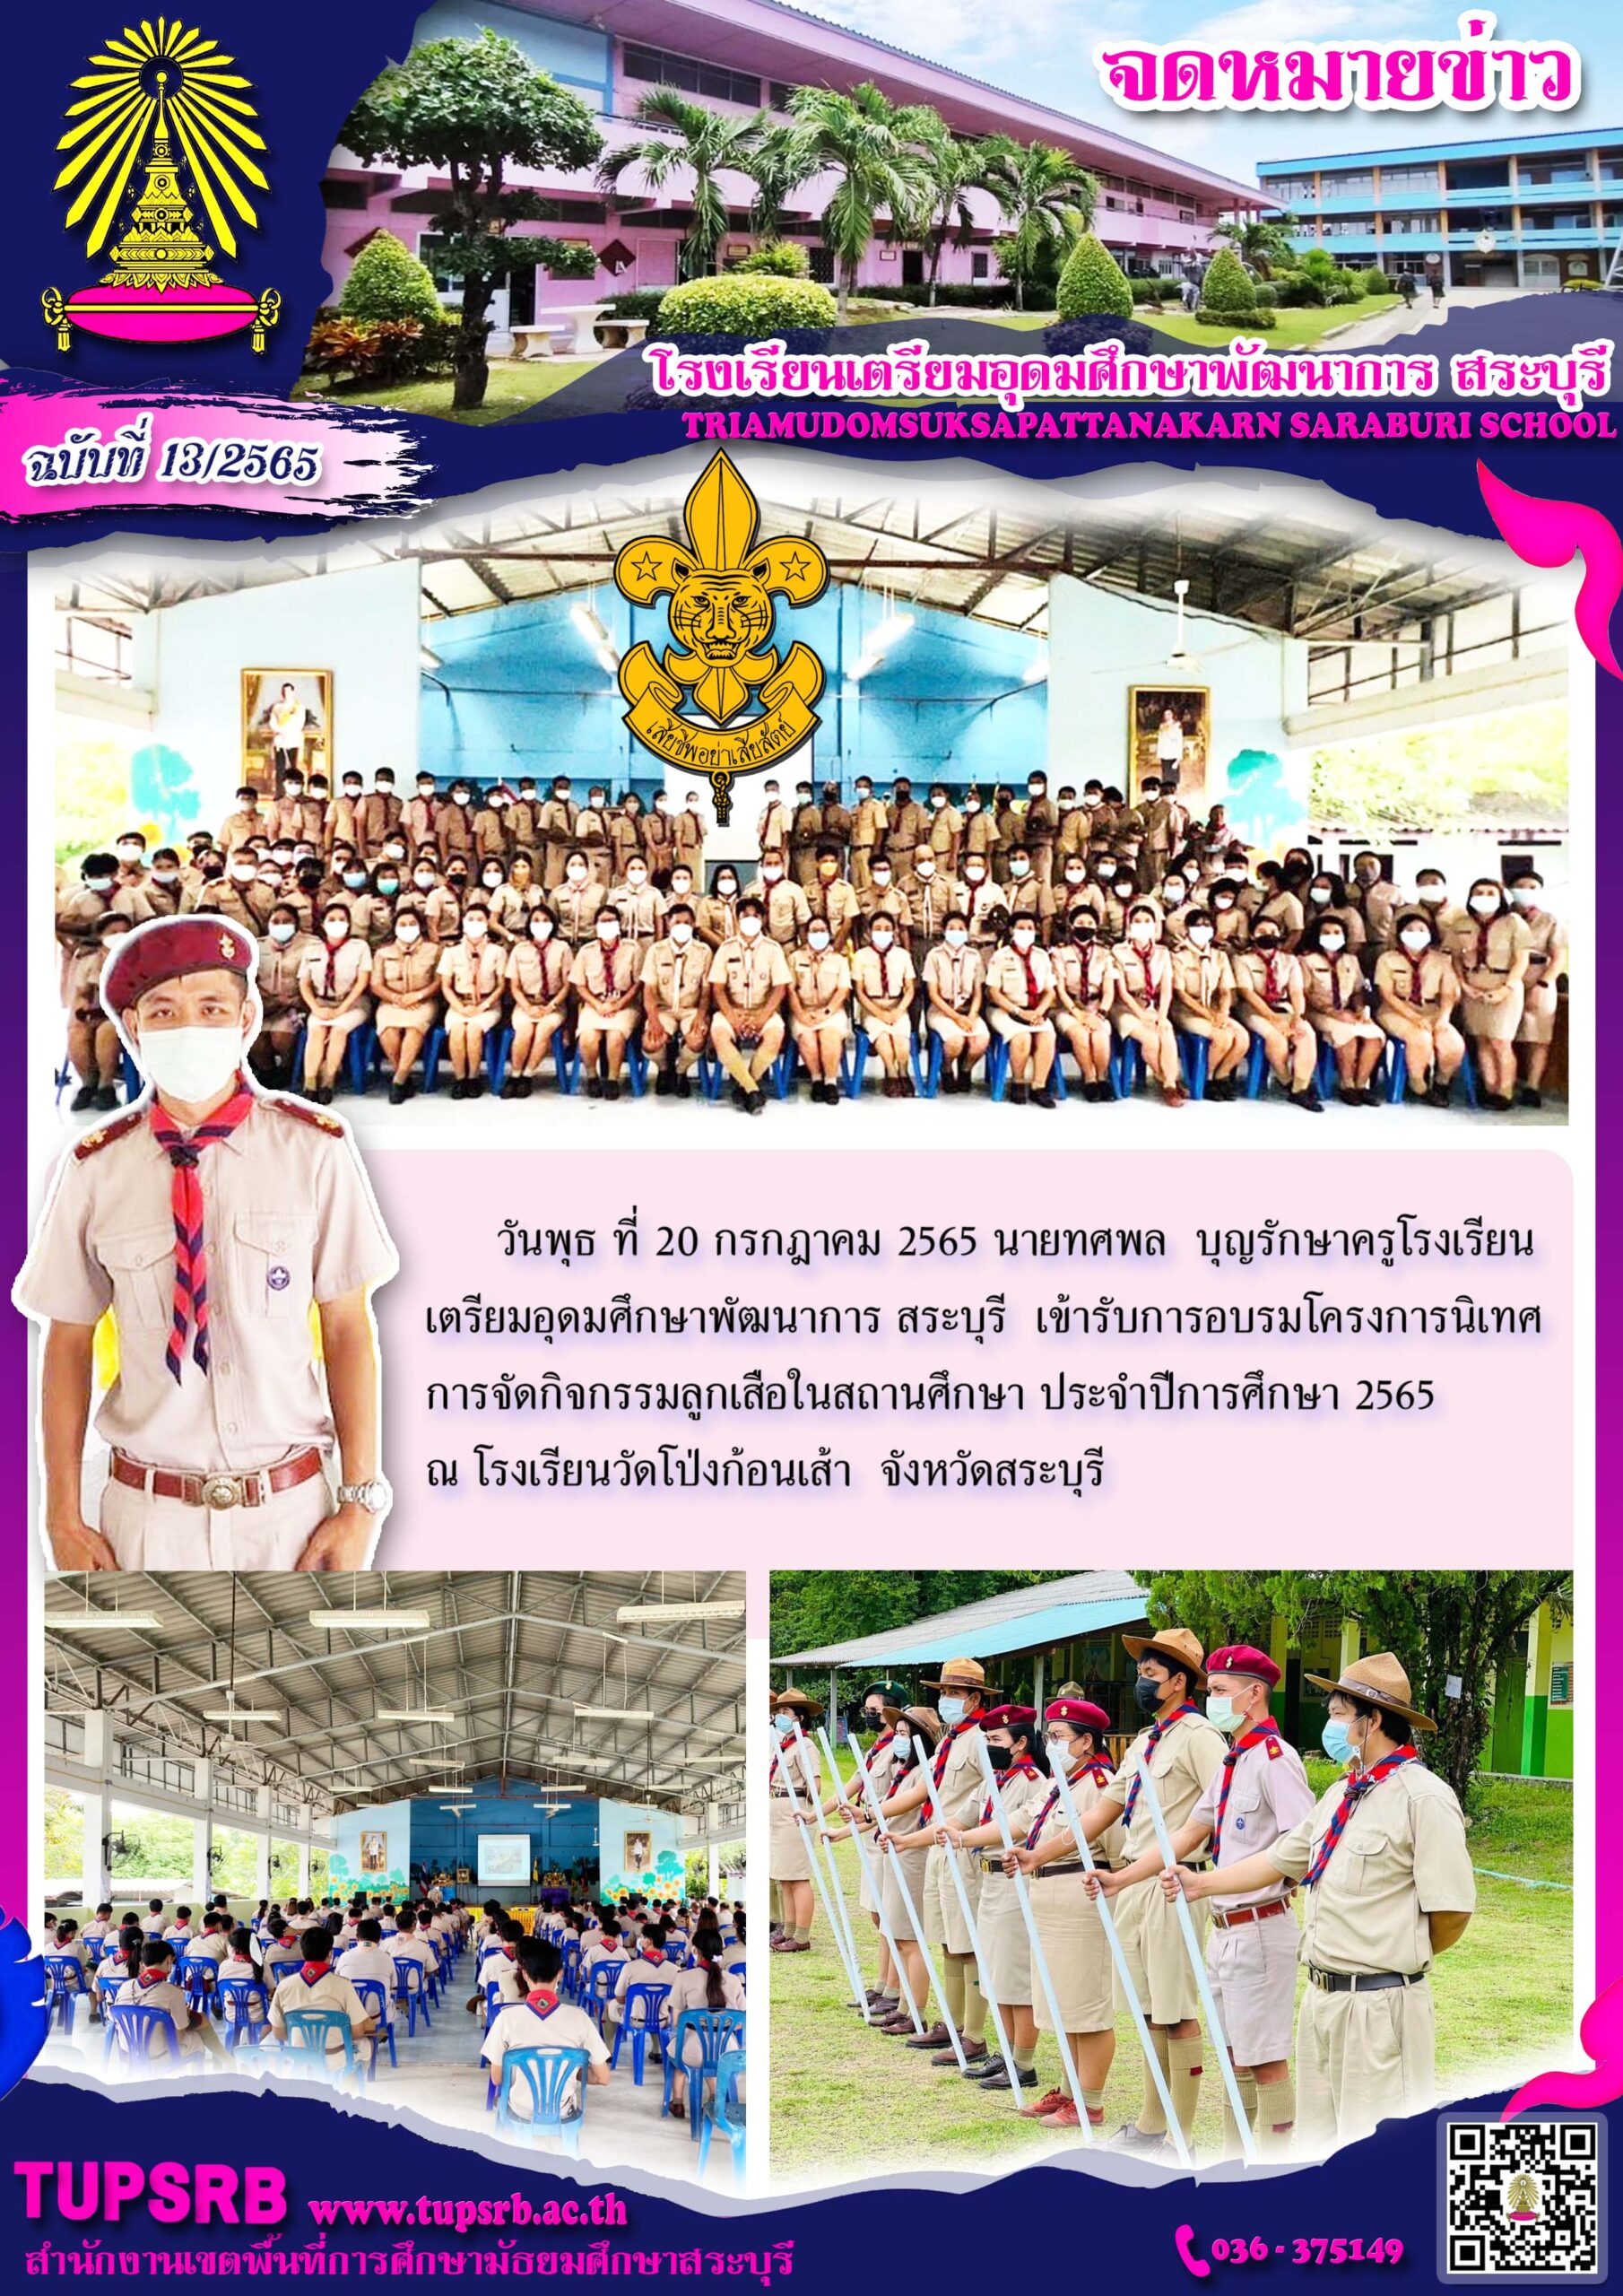 วันพุธ ที่ 20 กรกฎาคม 2565 นายทศพล บุญรักษาครูโรงเรียน เตรียมอุดมศึกษาพัฒนาการ สระบุรี เข้ารับการอบรมโครงการนิเทศ การจัดกิจกรรมลูกเสือในสถานศึกษา ประจำปีการศึกษา 2565 ณ โรงเรียนวัดโป่งก้อนเส้า จังหวัดสระบุรี